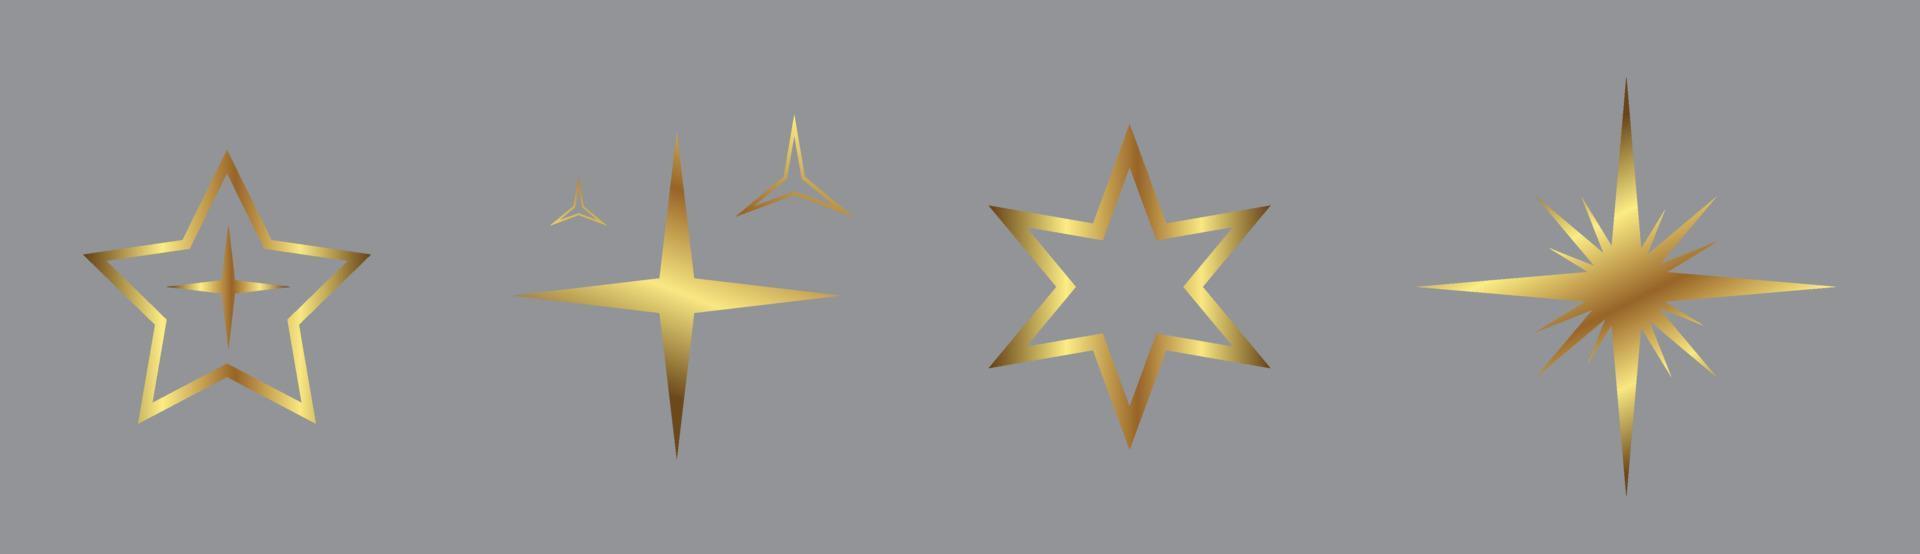 conjunto de infografías del universo dorado y brillante de la estrella dorada, símbolo solar del icono de la luz estelar vector